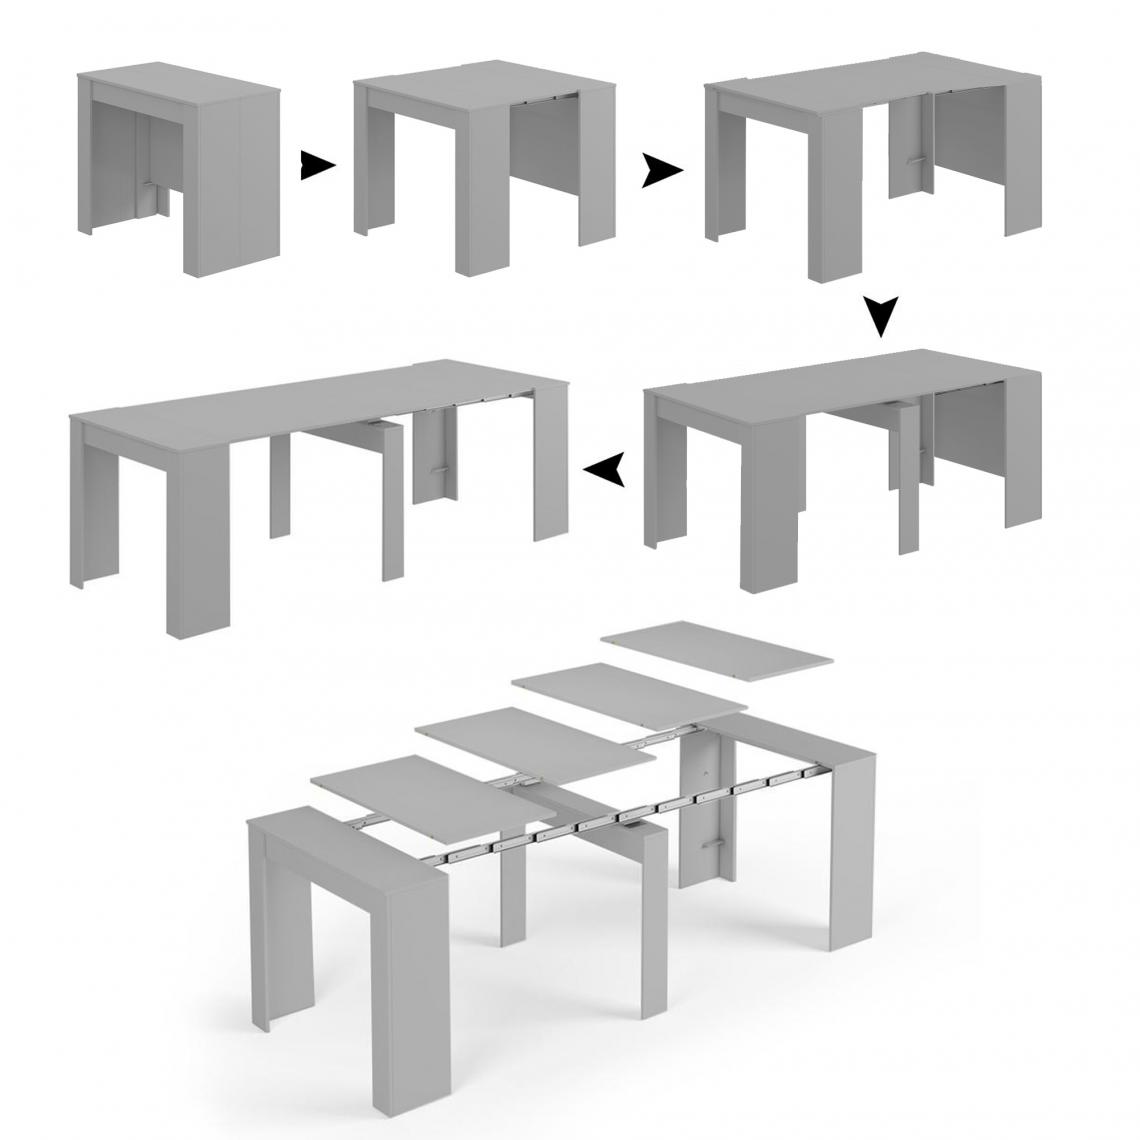 Alter - Table à manger, Console extensible, Avec support d'extension, couleur béton, Dimensions 90 x 51 x 78 cm (jusqu'à 237 avec rallonges) - Tables à manger